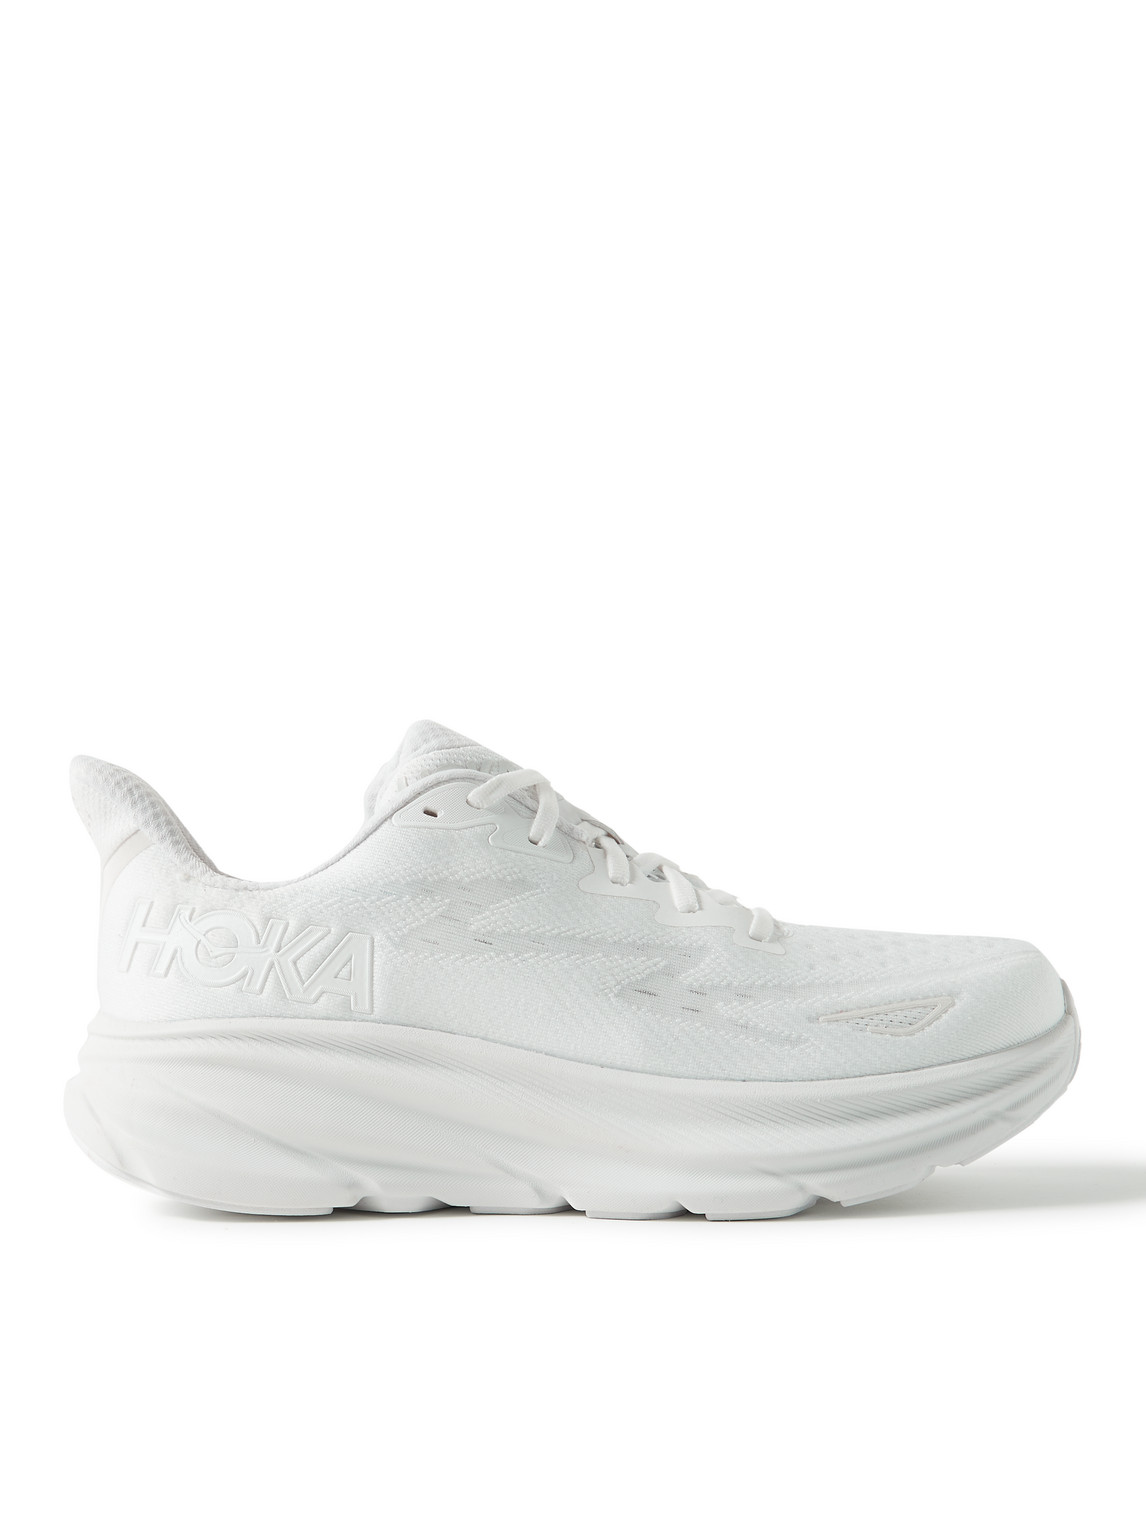 Hoka One One Clifton 9 Sneaker In White/white